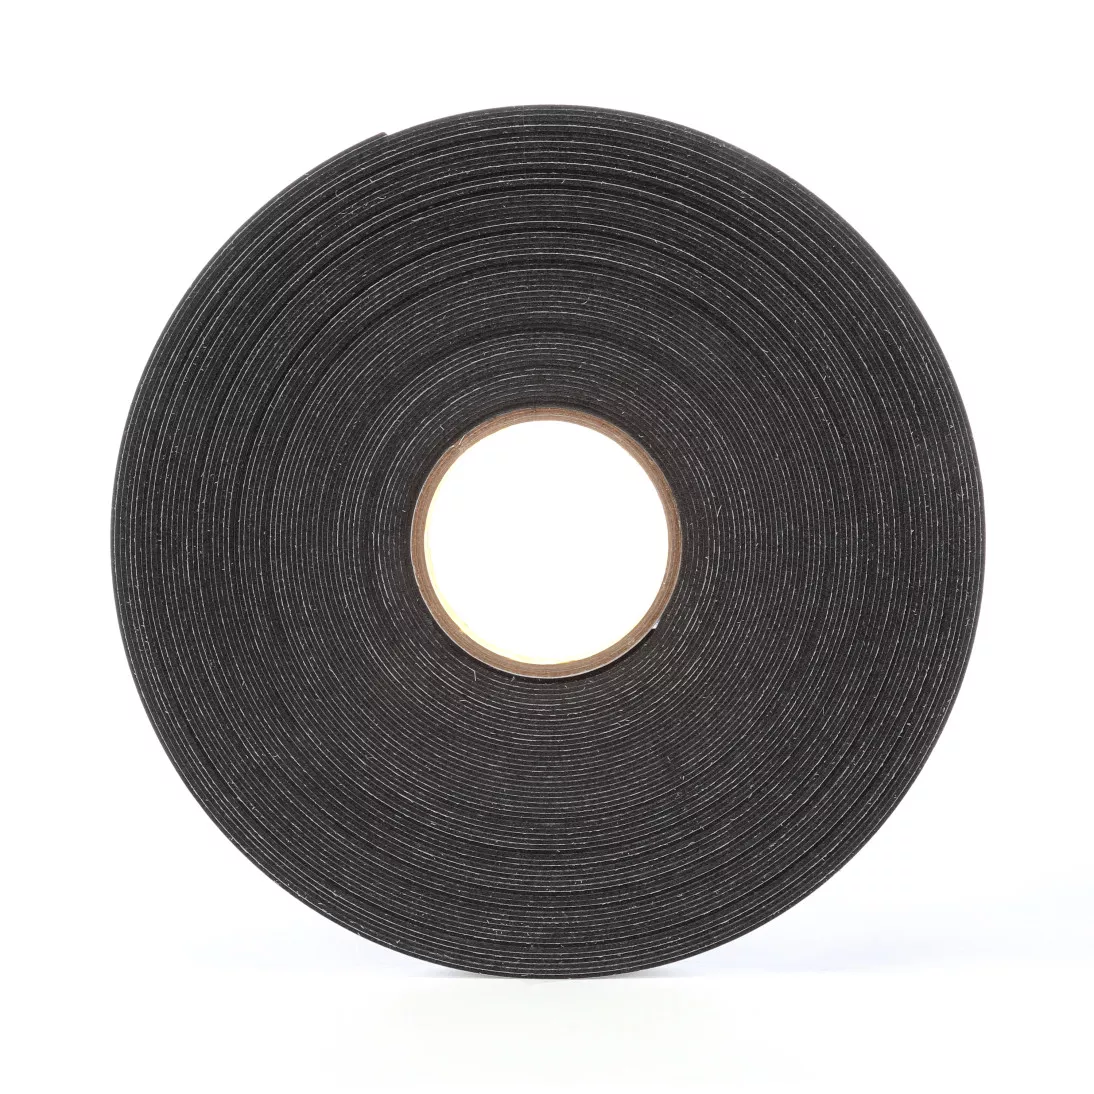 3M™ Double Coated Polyethylene Foam Tape 4462, Black, 1/4 in x 72 yd, 31
mil, 36 rolls per case